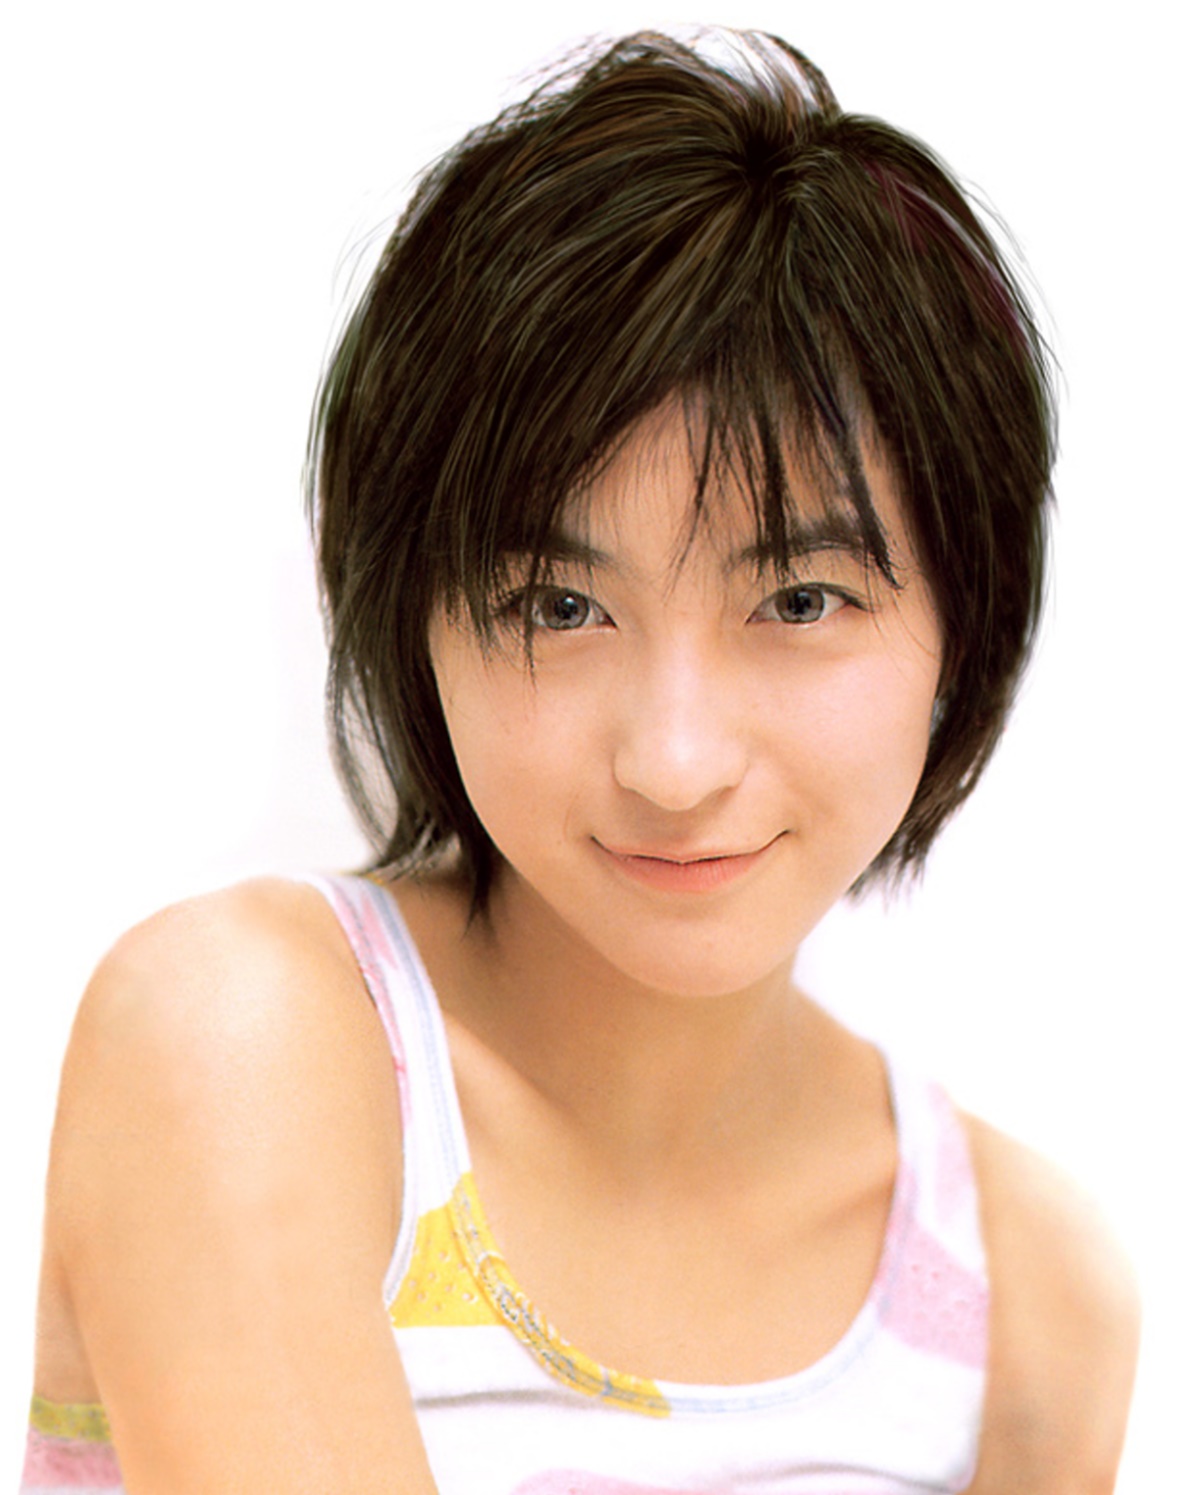 広末涼子さんは 女優として絶頂期のふもとに立ったばかりなんでしょうね 美しい女優 モデルとセレブたち